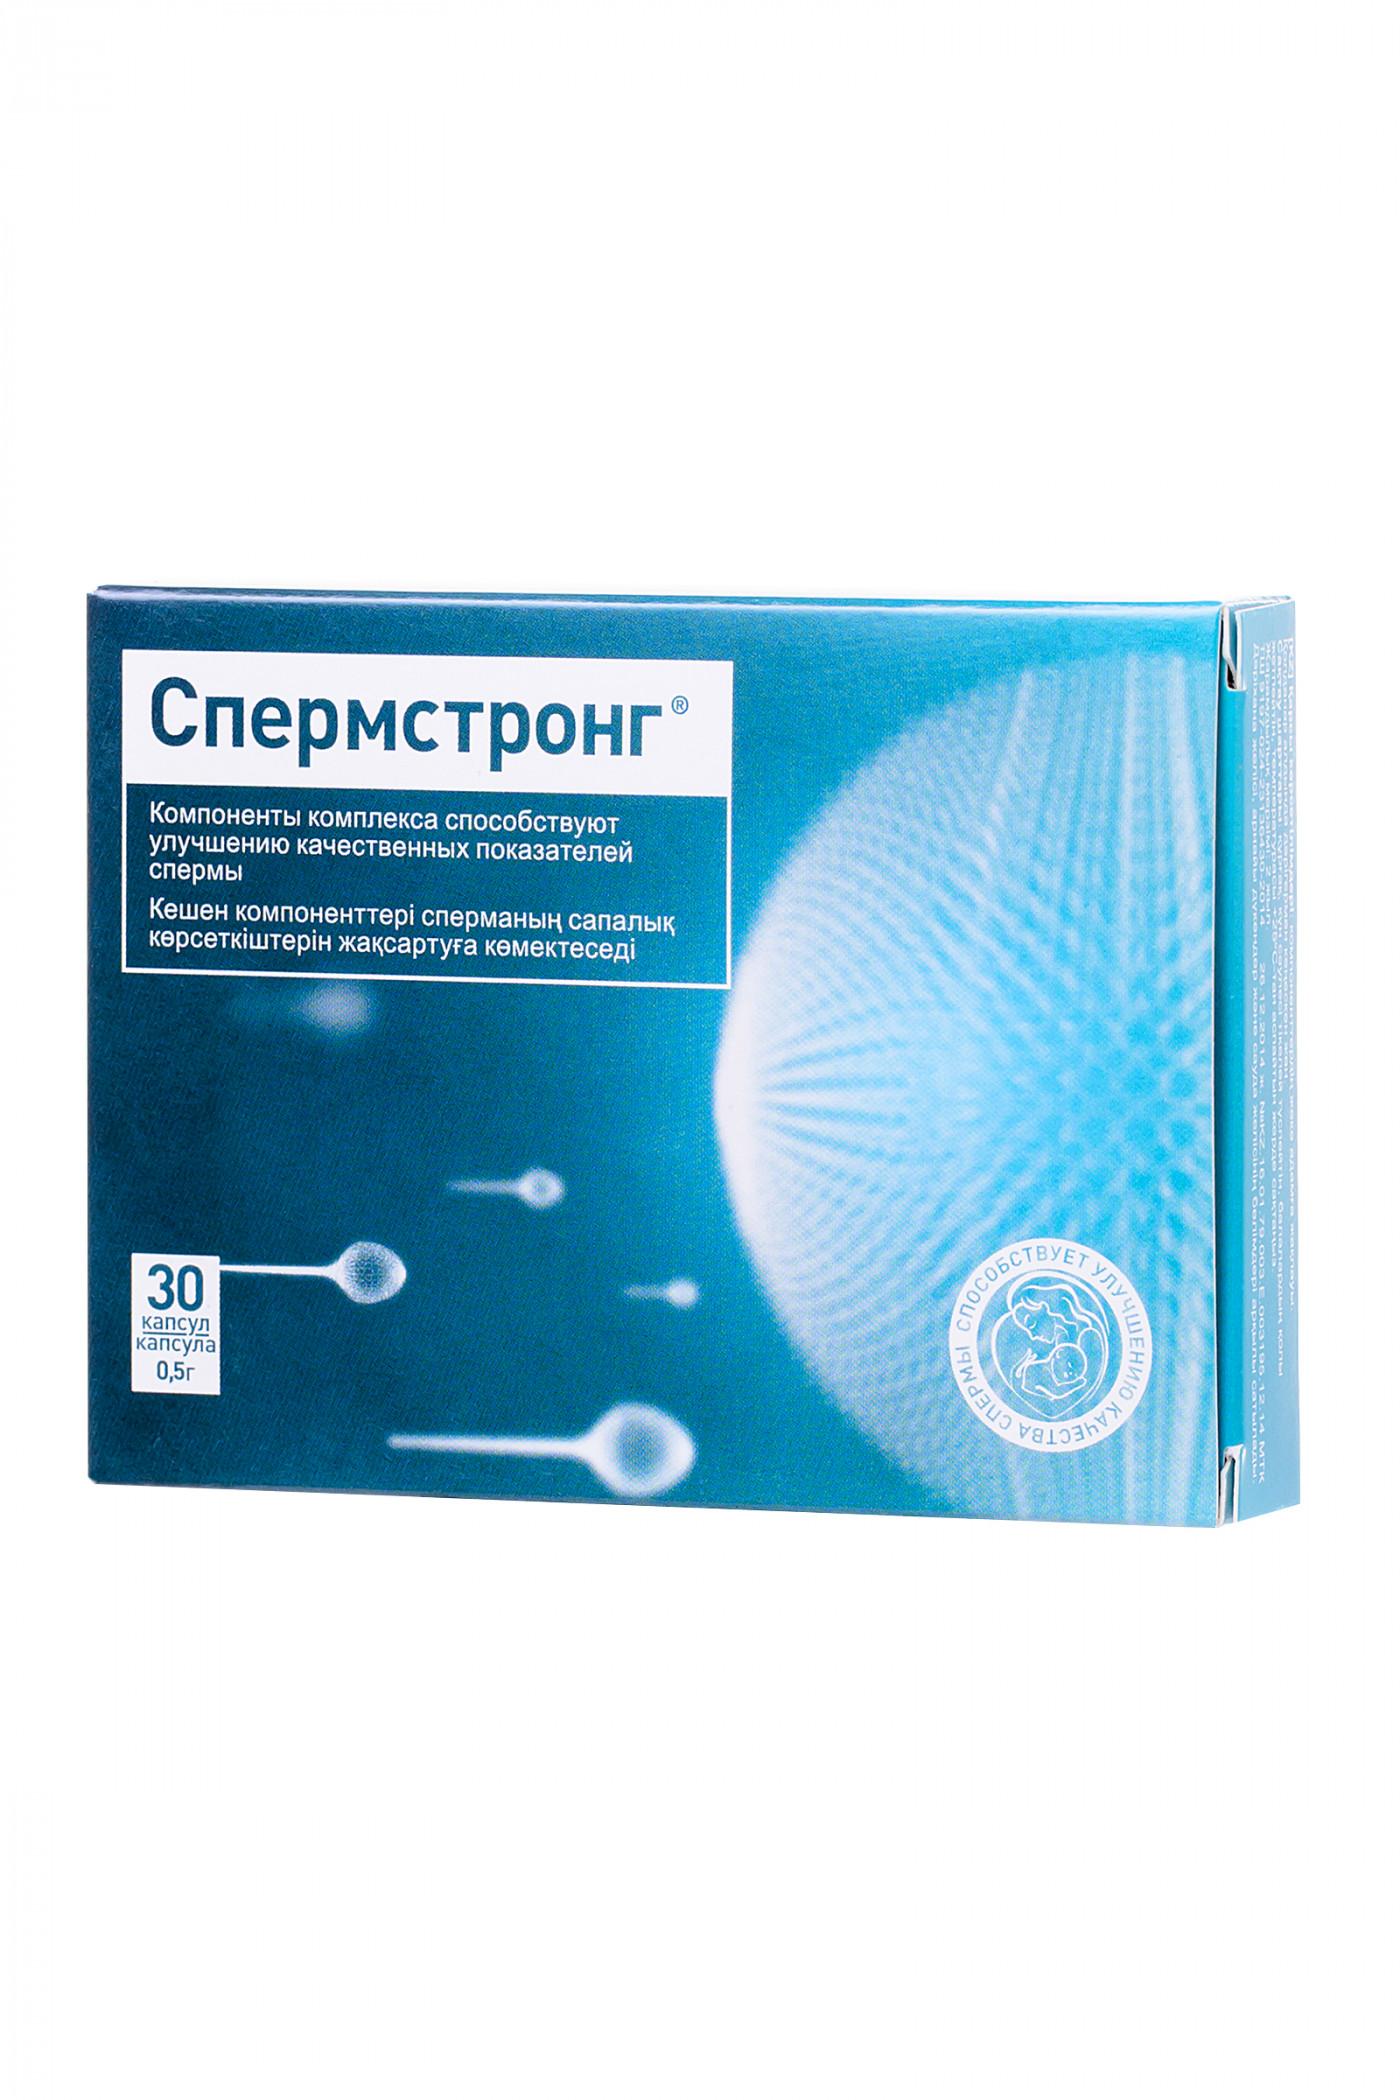 СпермСтронг – повышение качества спермы и мужского здоровья Vestalshop.ru - Изображение 3